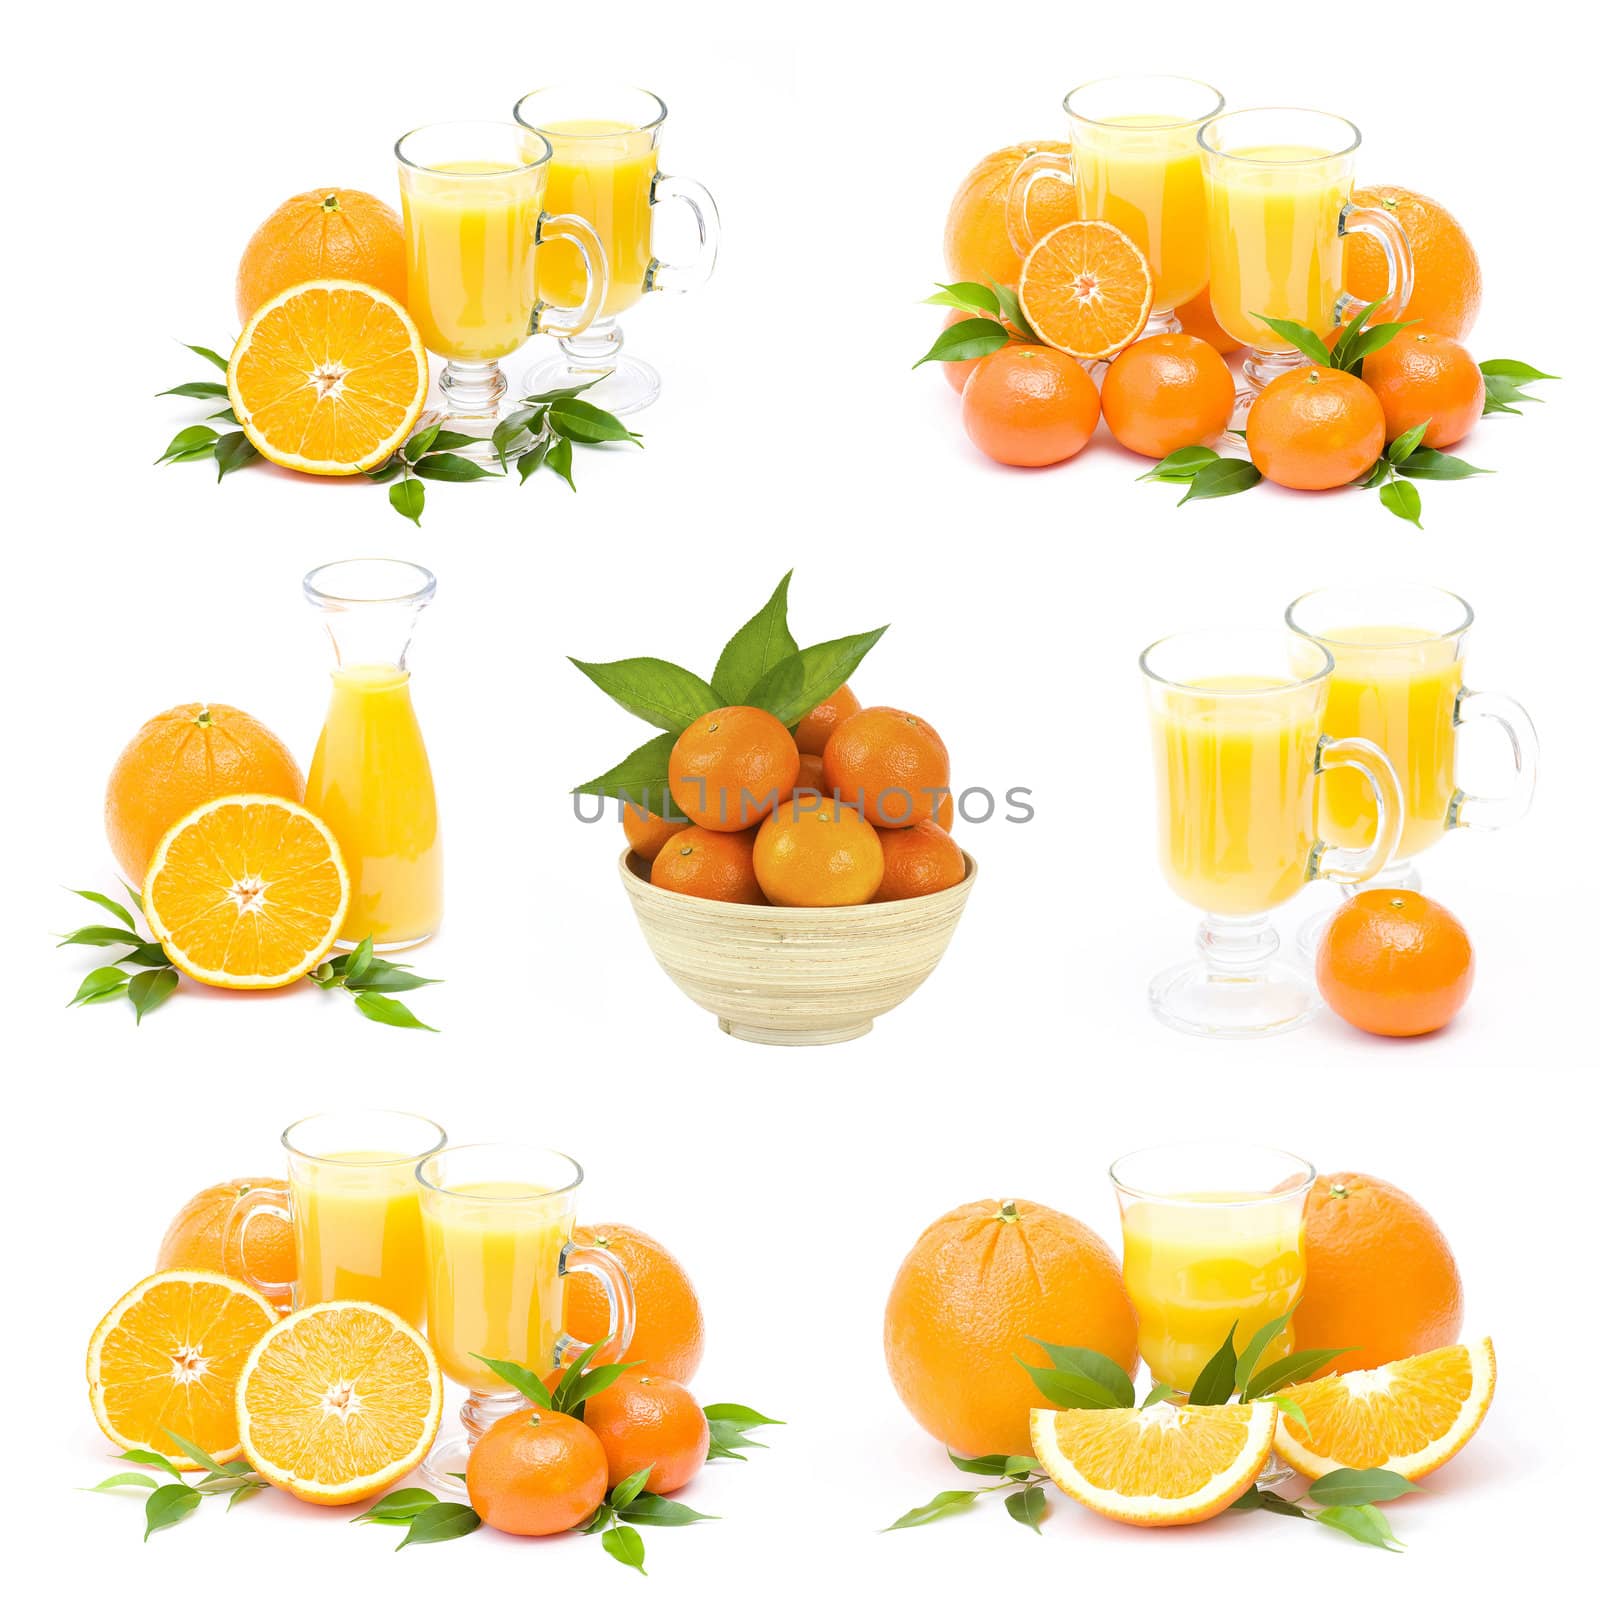 orange juice and fresh fruits - collage